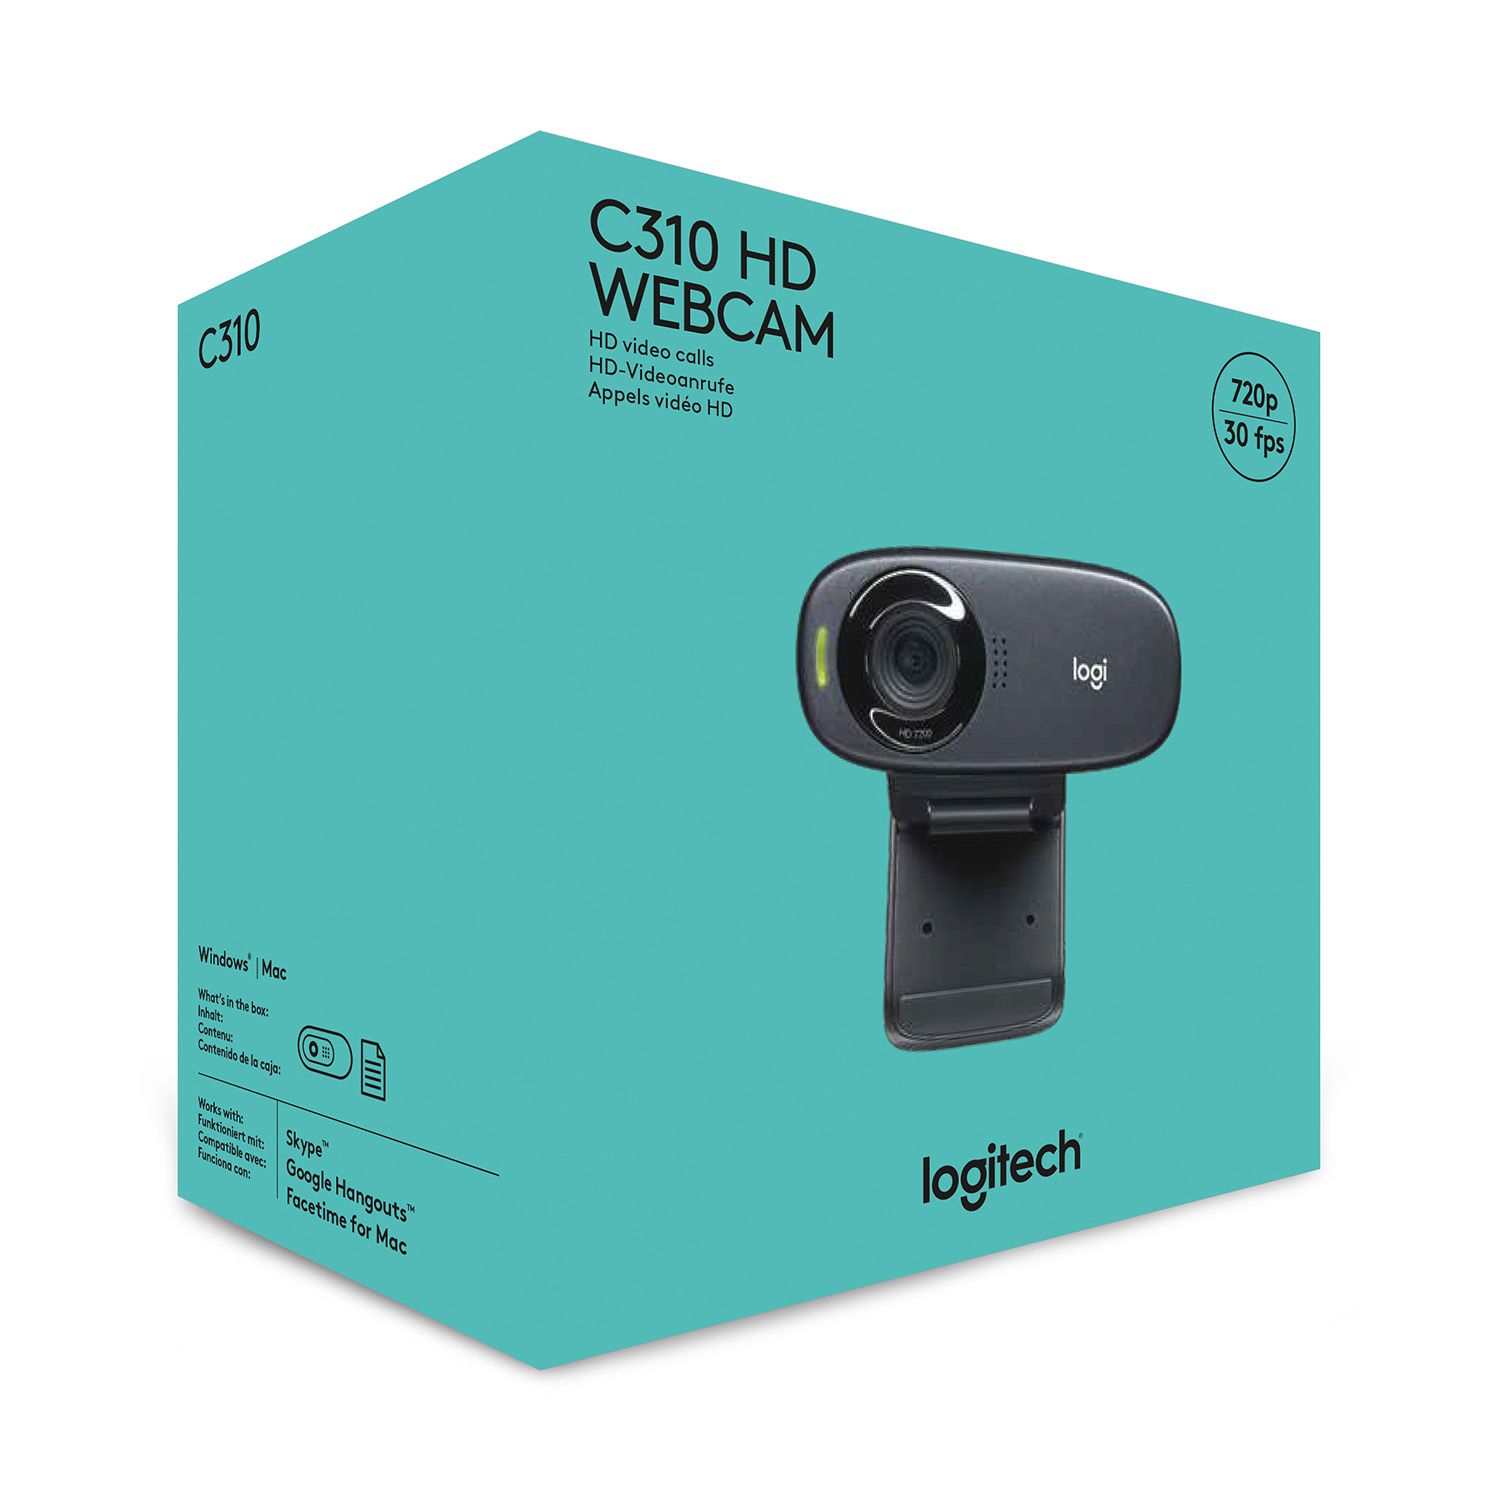 C310 webcam